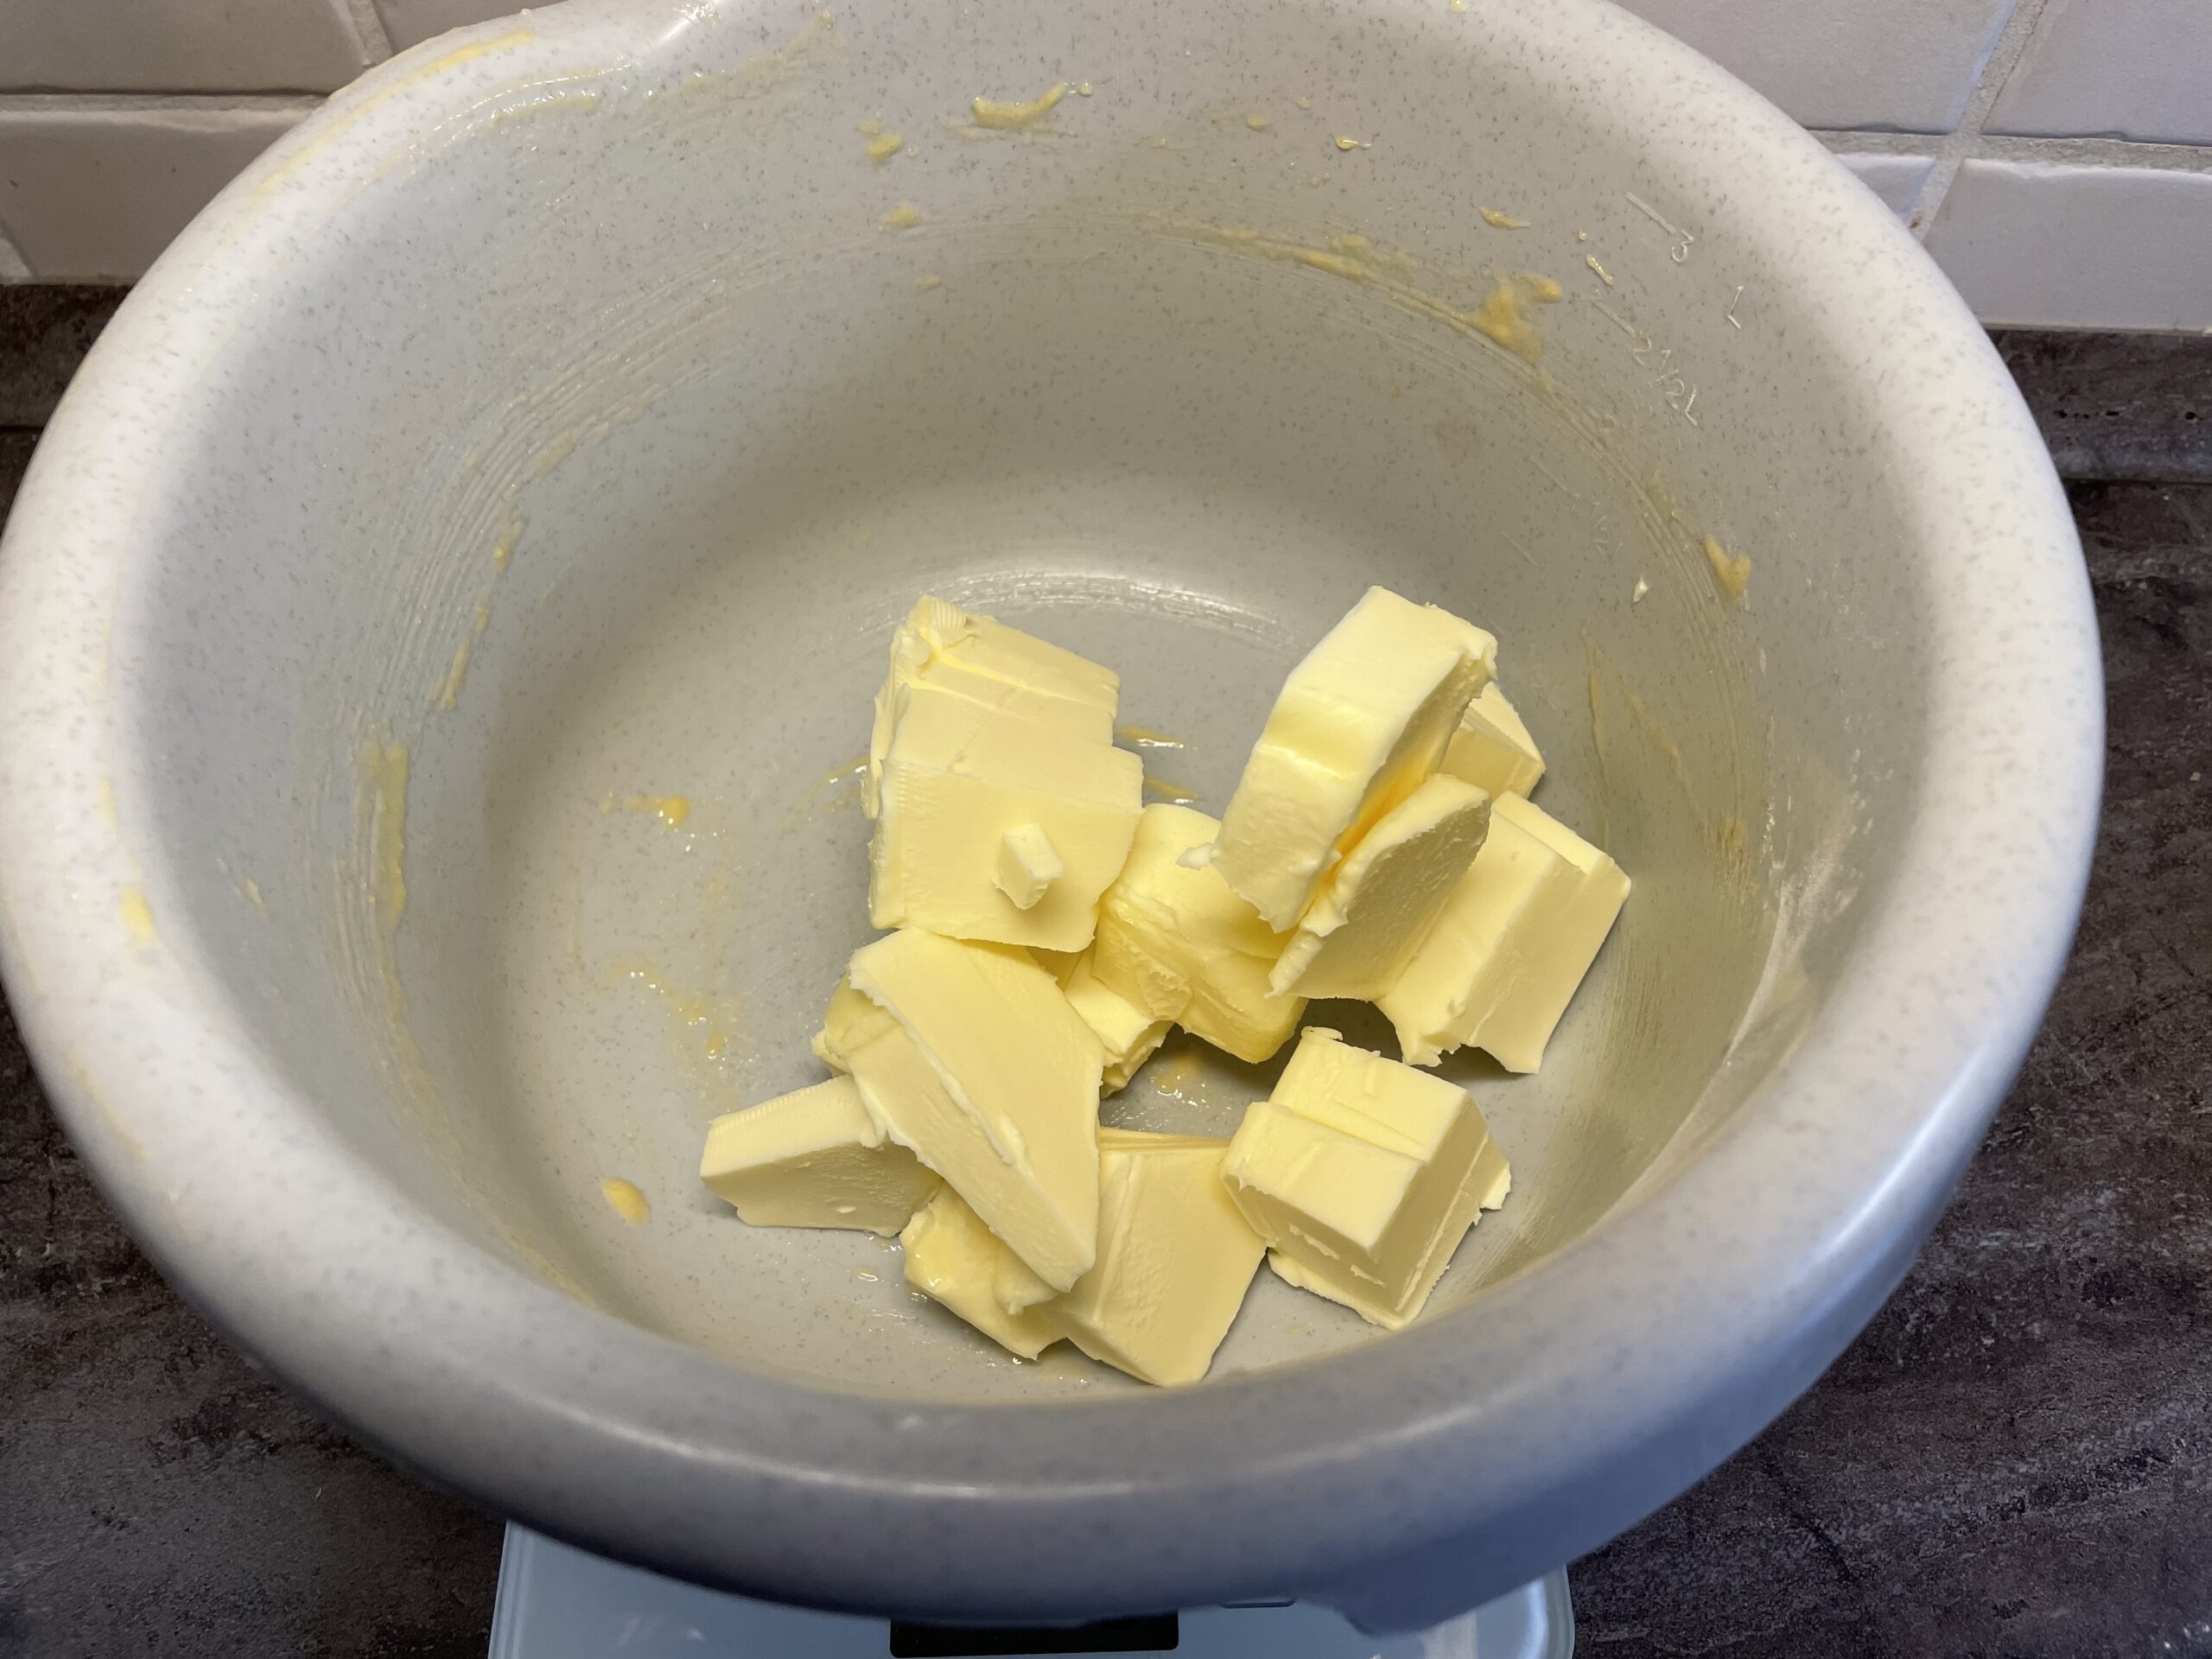 Bild zum Schritt 19 für das Bastel- und DIY-Abenteuer für Kinder: 'Gebt die Butter in die Rührschüssel.'